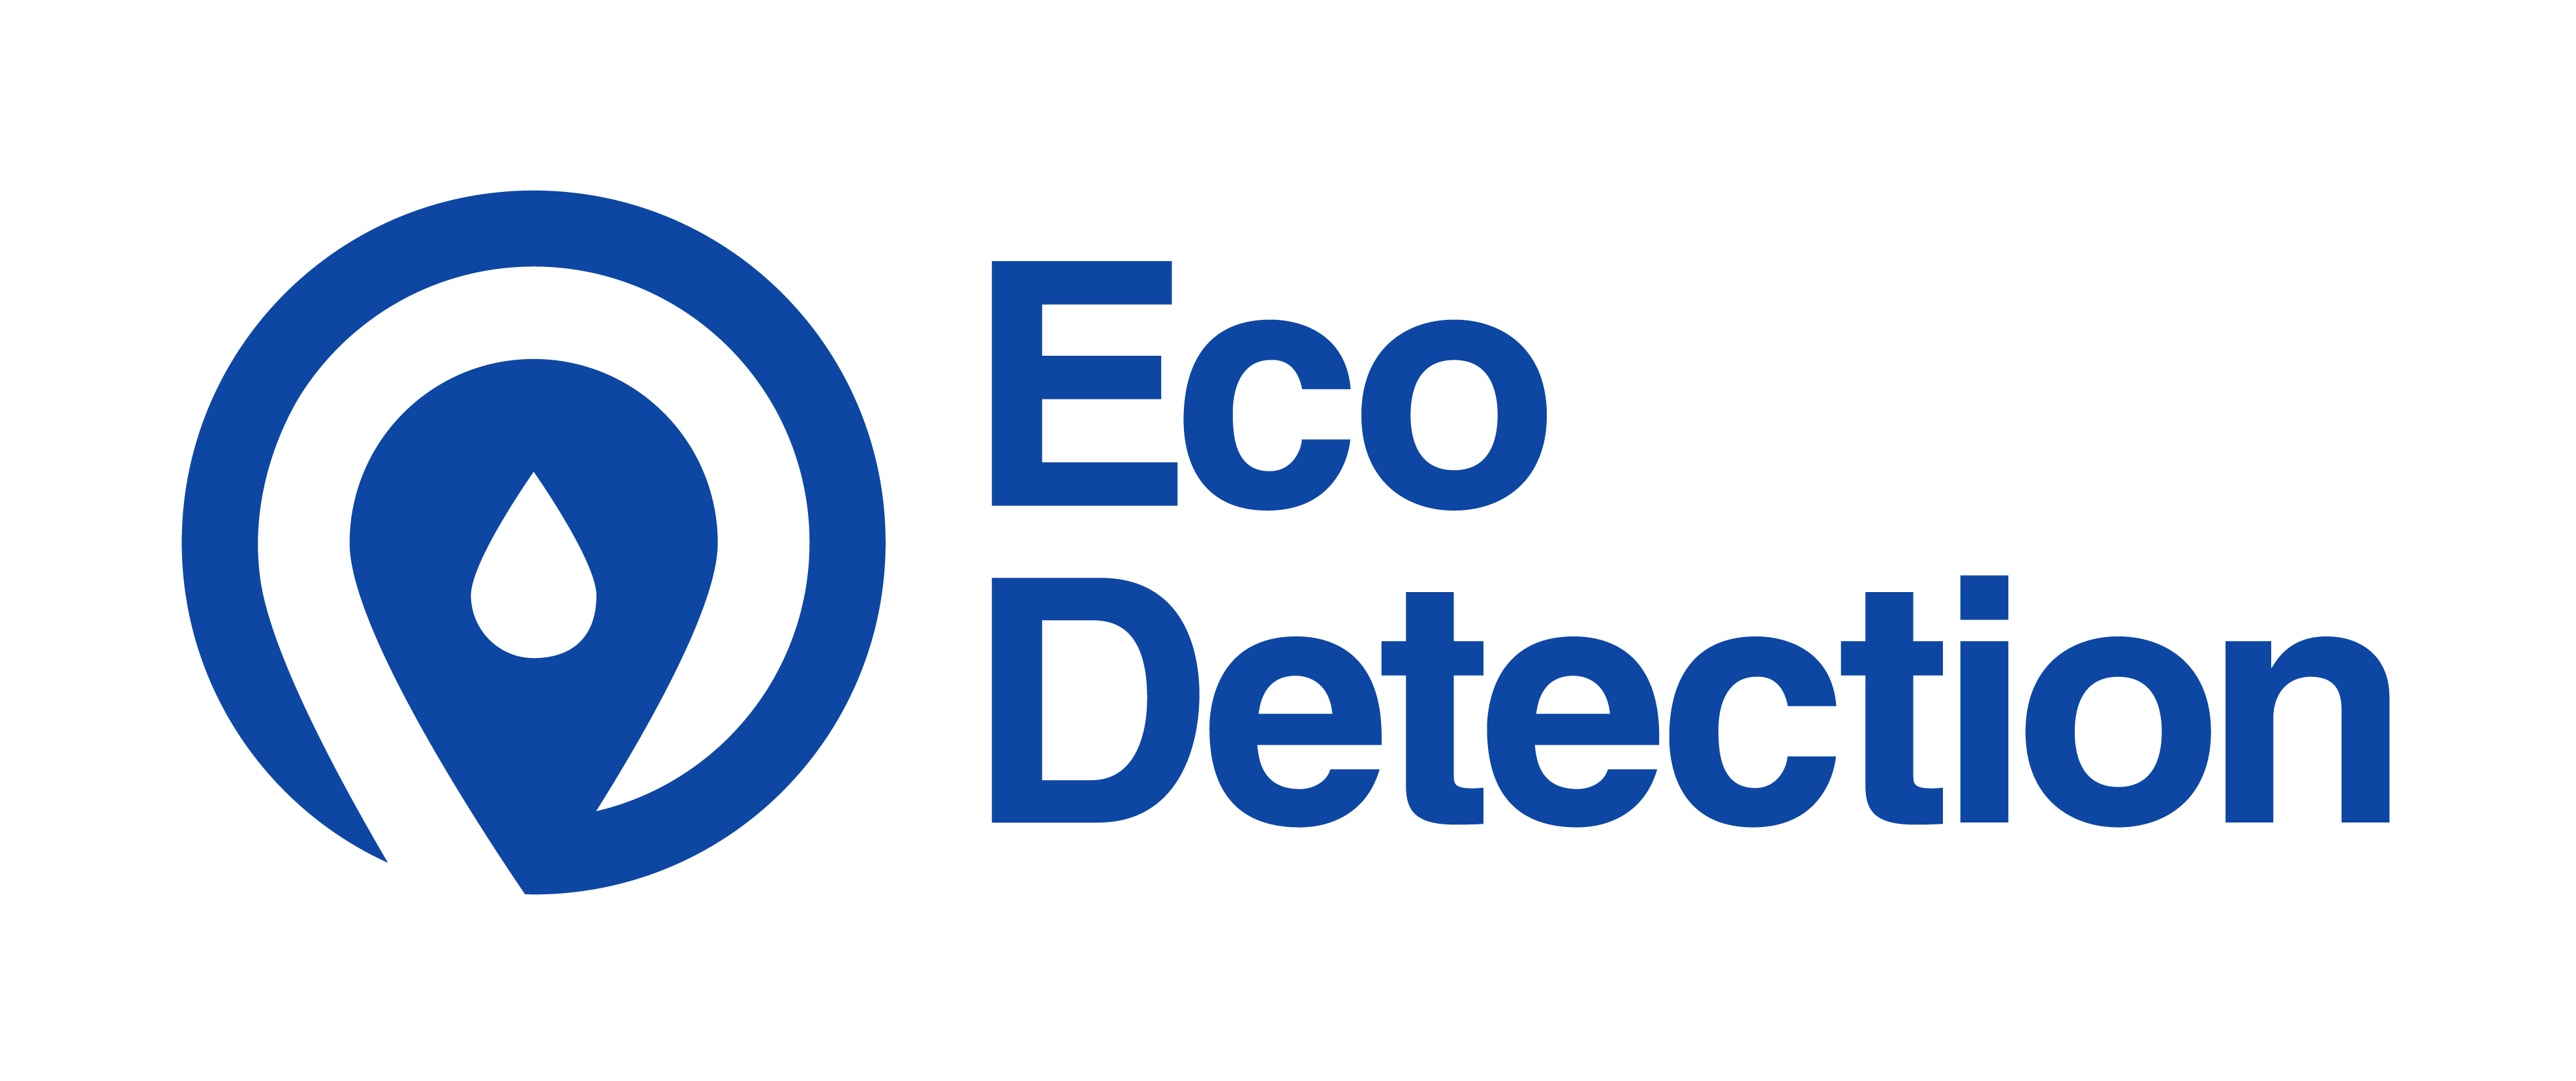 Eco Detection